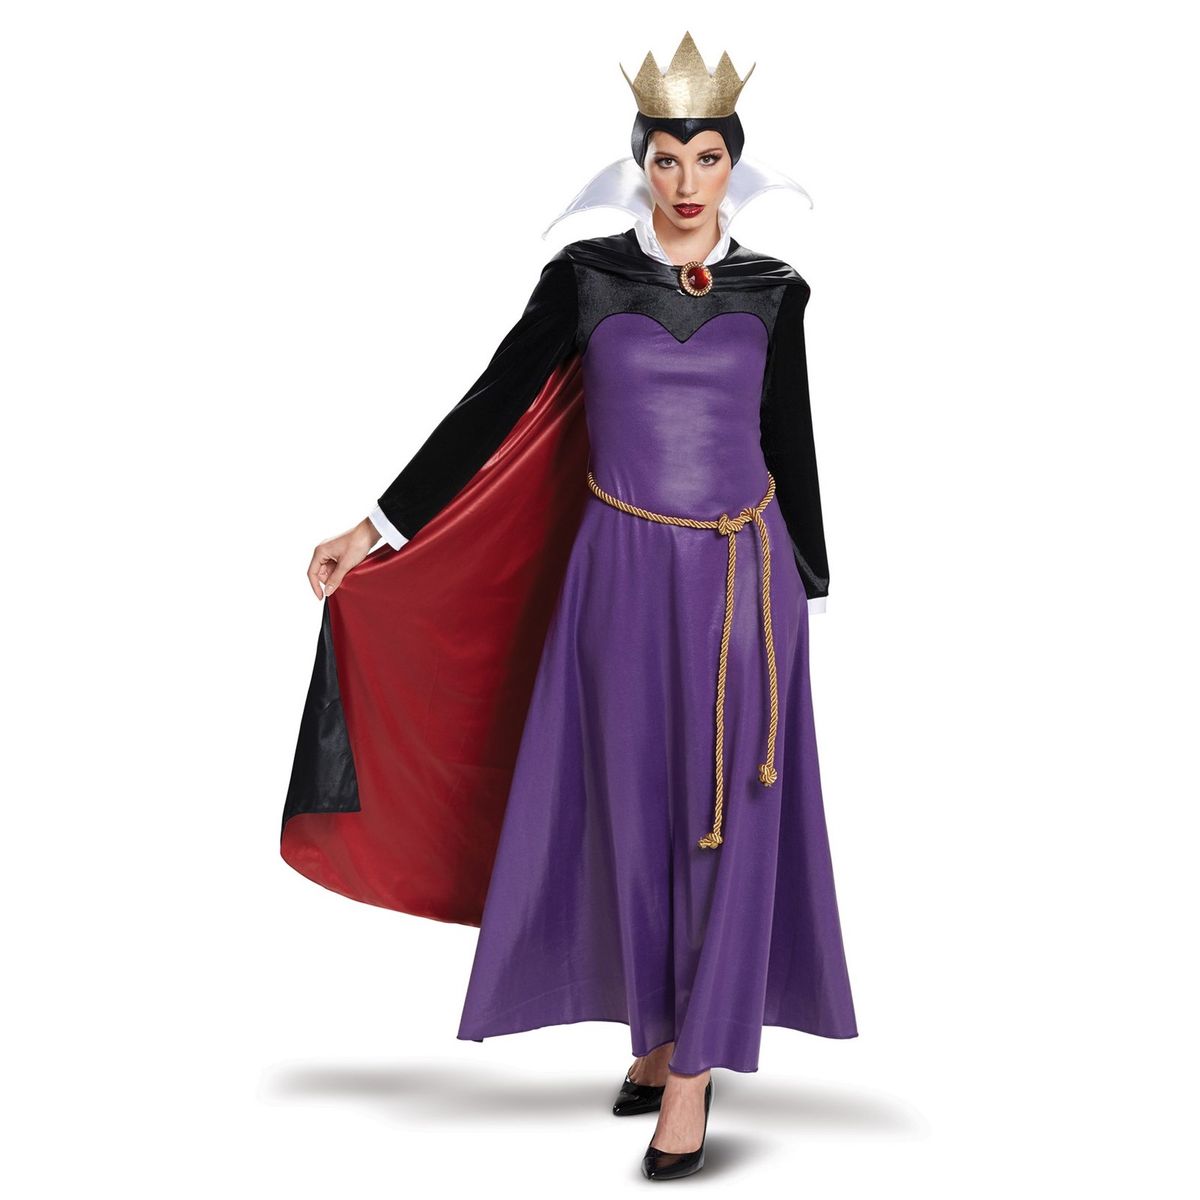 送料無料 ディズニーヴィランズ イービルクイーン 鮮麗 大供用法 ハロウィン コスプレ 被服 大人 ウエア 楽天論海外メールオーダー Disney Villains Evil Queen Deluxe Adult Halloween Costume Residenza Latorre Com